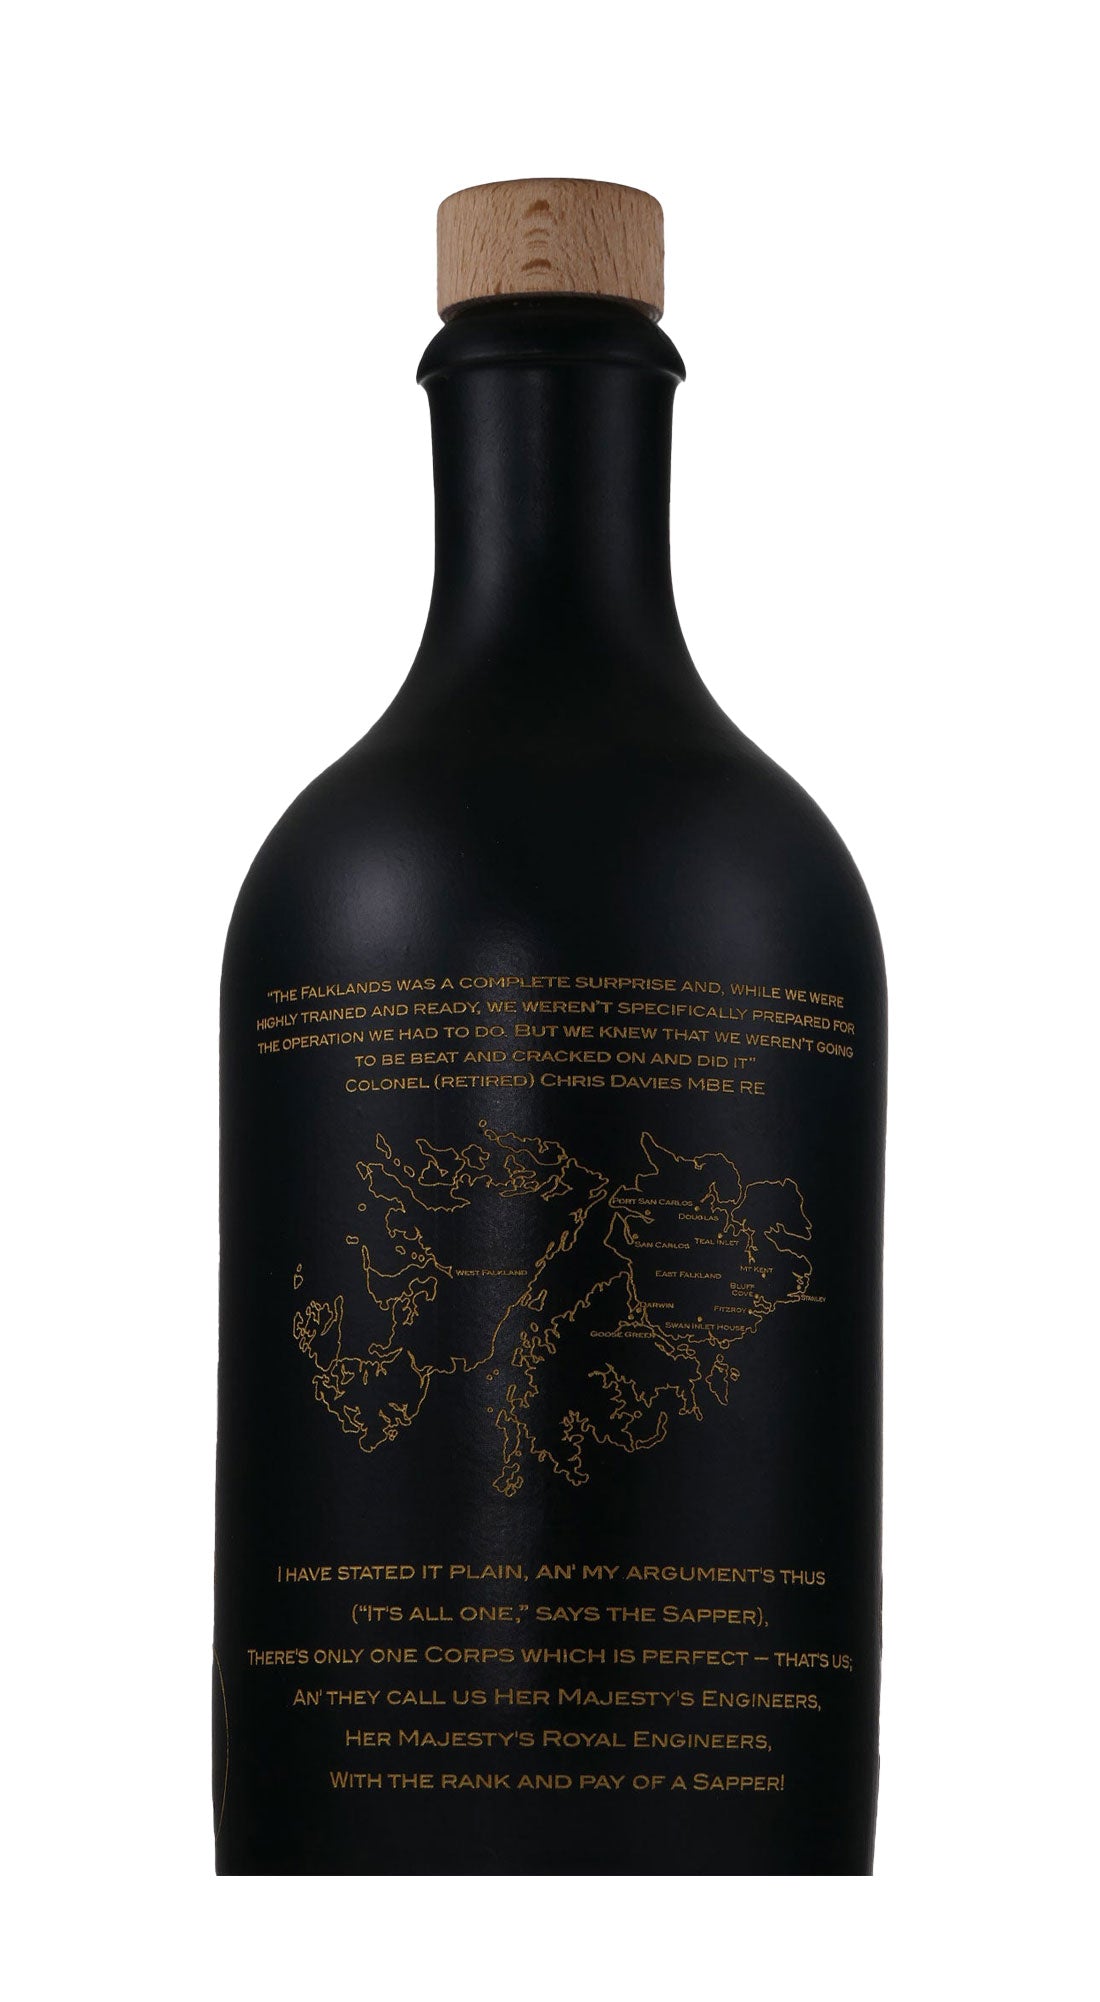 Sappers Premium Dark Rum 40th Falklands Special Edition 50cl